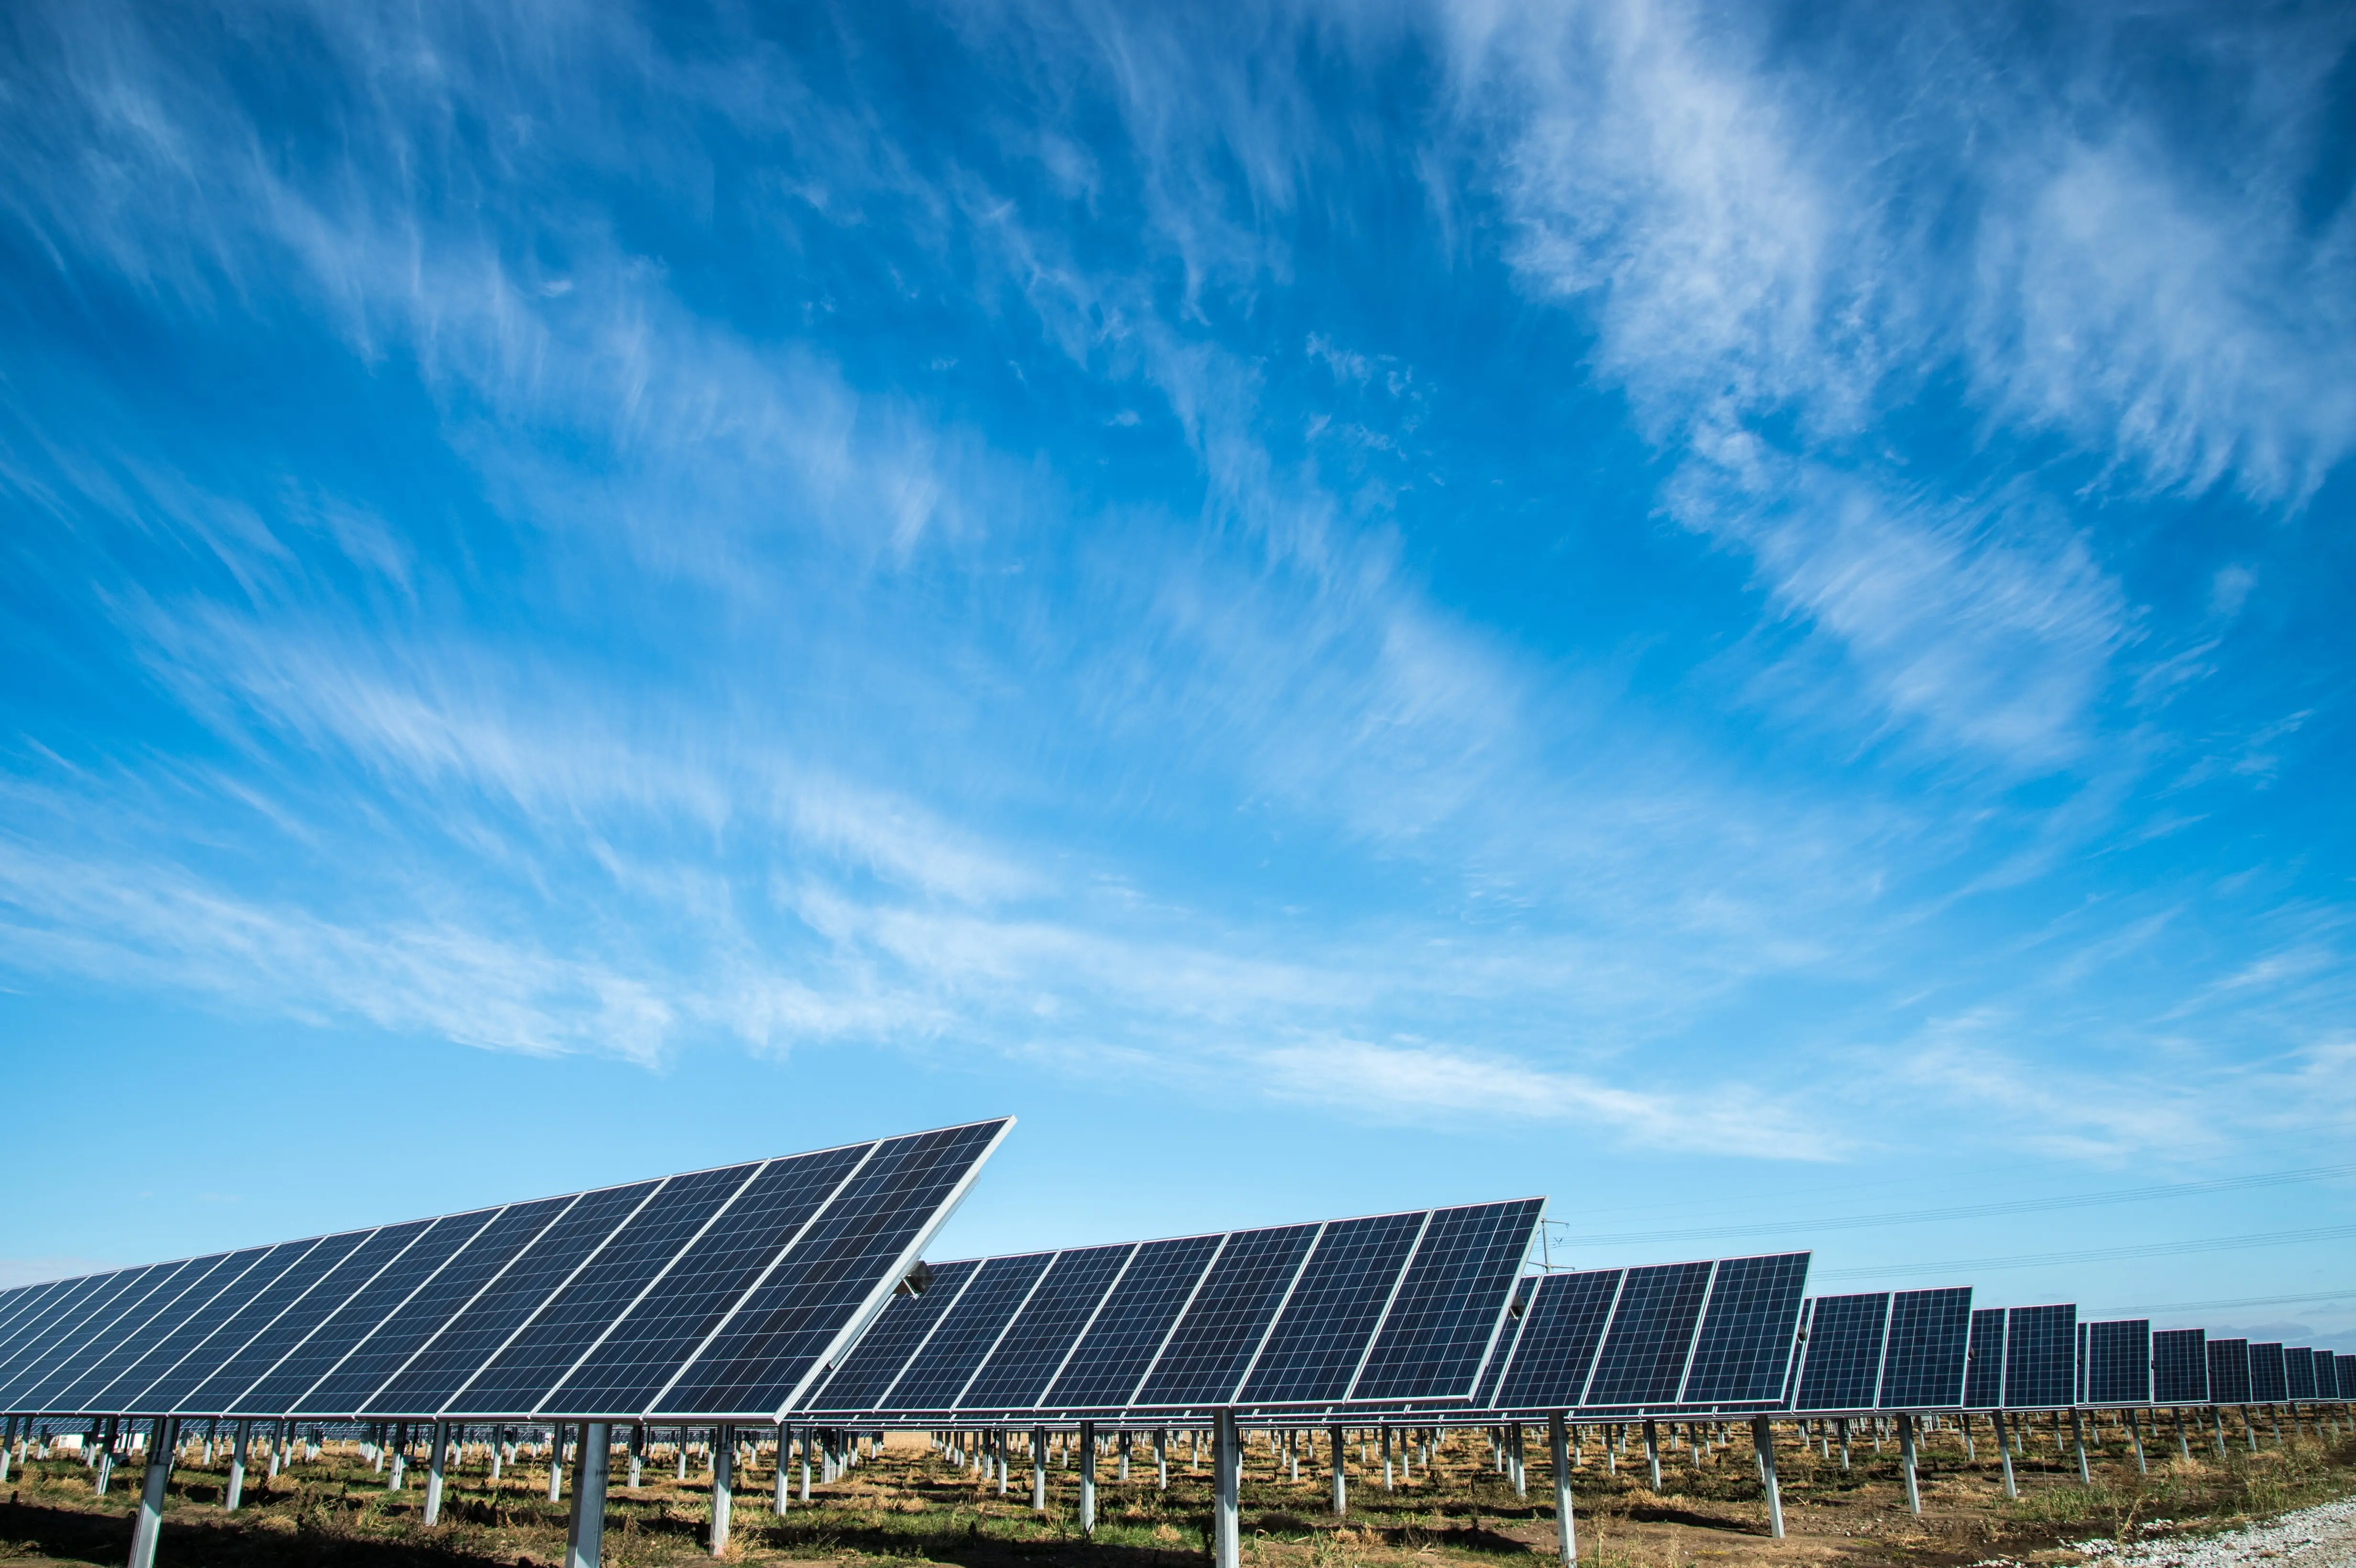 Ein Solarpark mit mehreren Reihen von Photovoltaik-Solarmodulen, die auf Metallstrukturen montiert sind, unter einem weiten blauen Himmel mit dünnen, zarten Wolken. Die Anlage erzeugt erneuerbare Energie und befindet sich in einer flachen, offenen Landschaft bei Tageslicht.